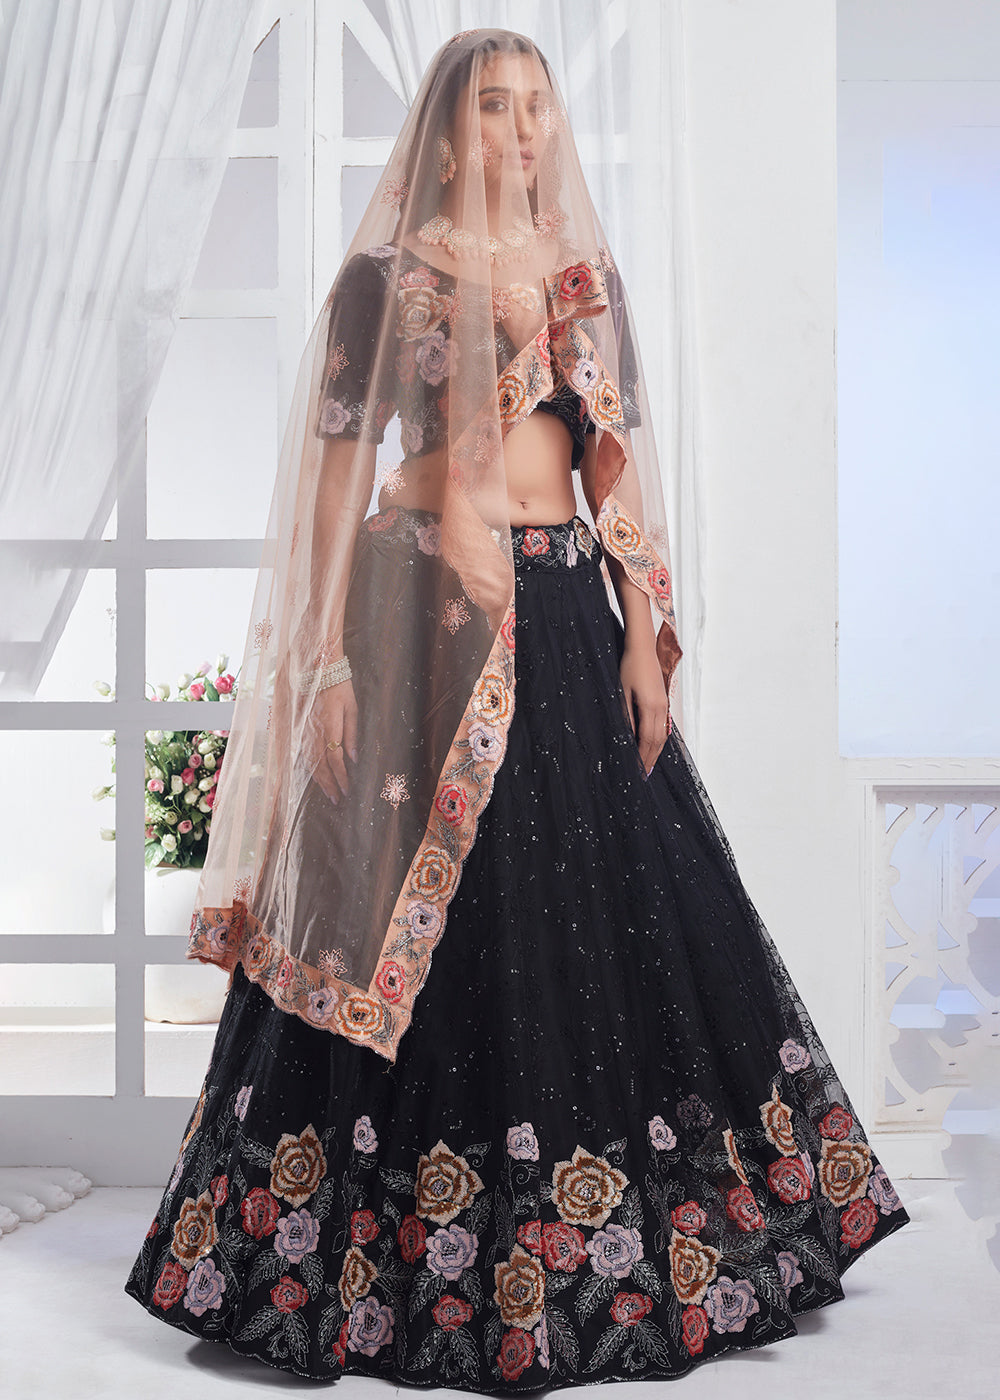 Buy Now Black Designer Style Embroidered Wedding Lehenga Choli Online in USA, UK, Canada & Worldwide at Empress Clothing.